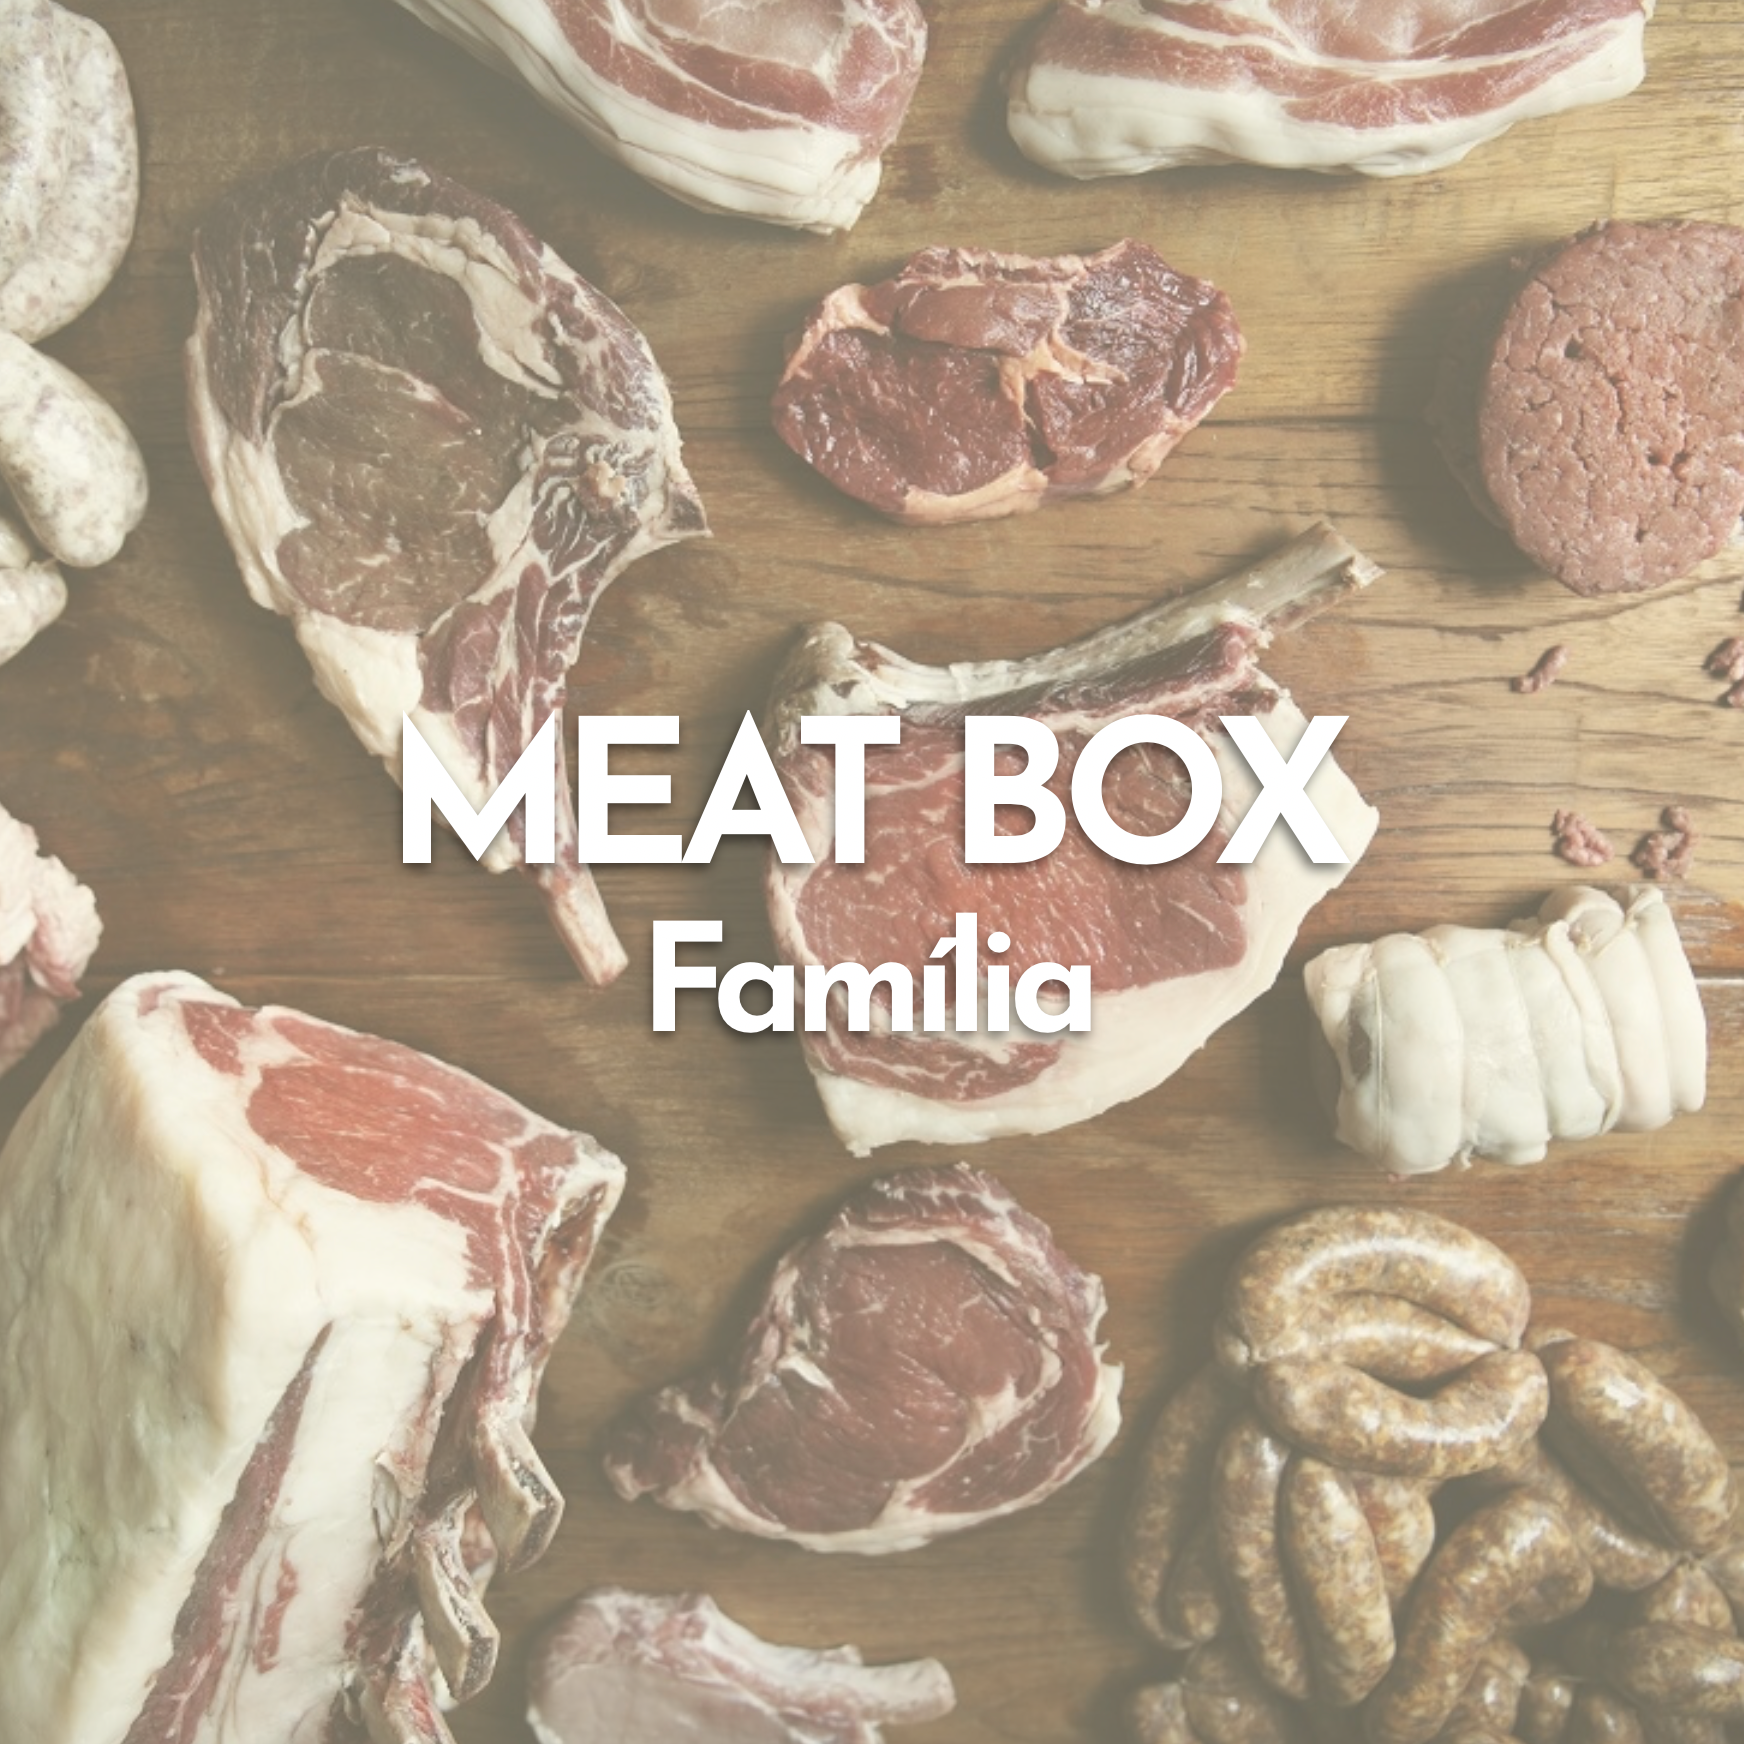 Meat Box Familia